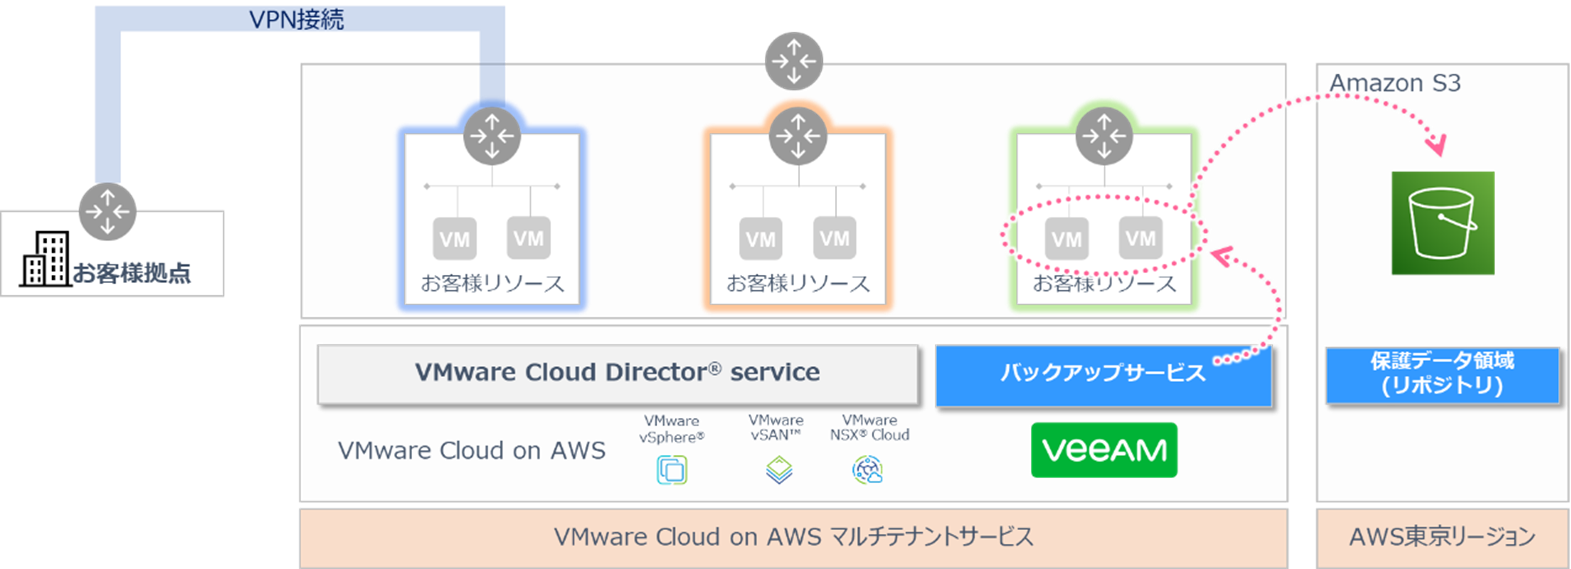 VMware Cloud™ on AWSをスモールスタートで利用する方法とは